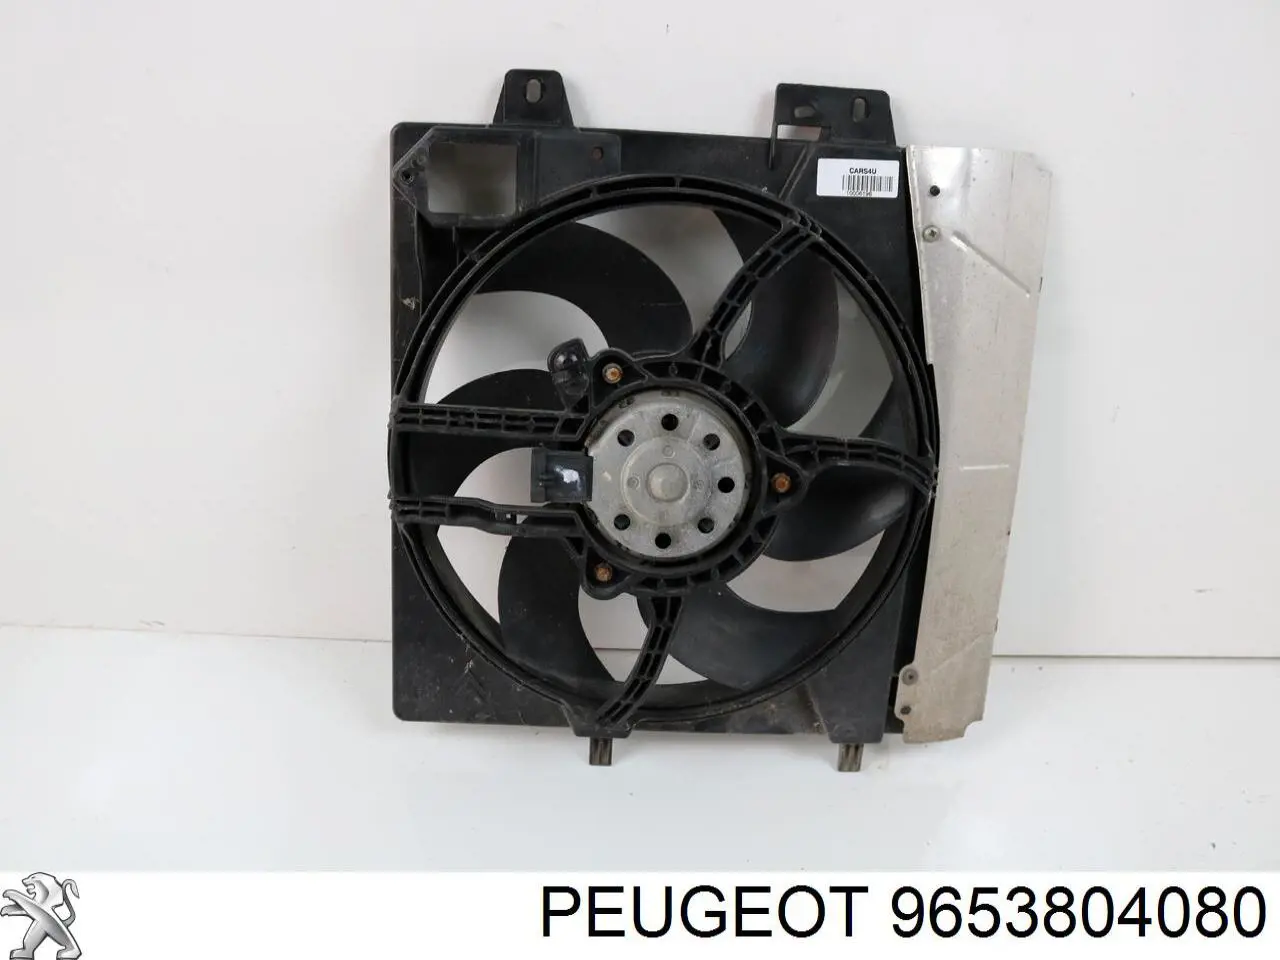 9653804080 Peugeot/Citroen difusor do radiador de esfriamento, montado com motor e roda de aletas